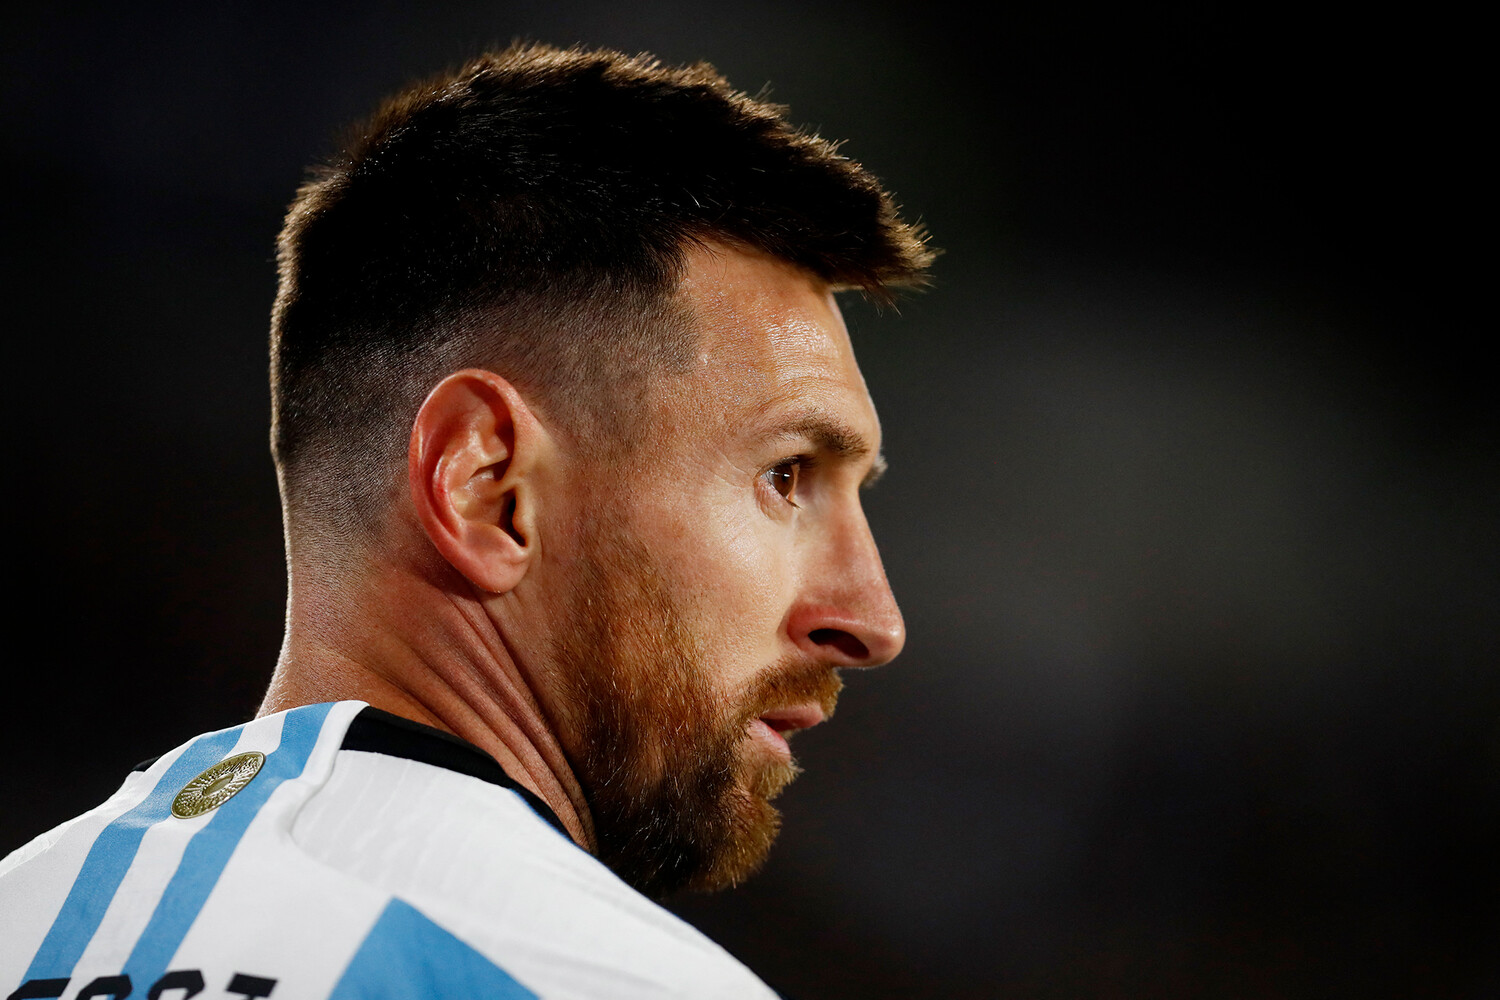 Матч сборной Аргентины отменен из-за скандала с Месси
